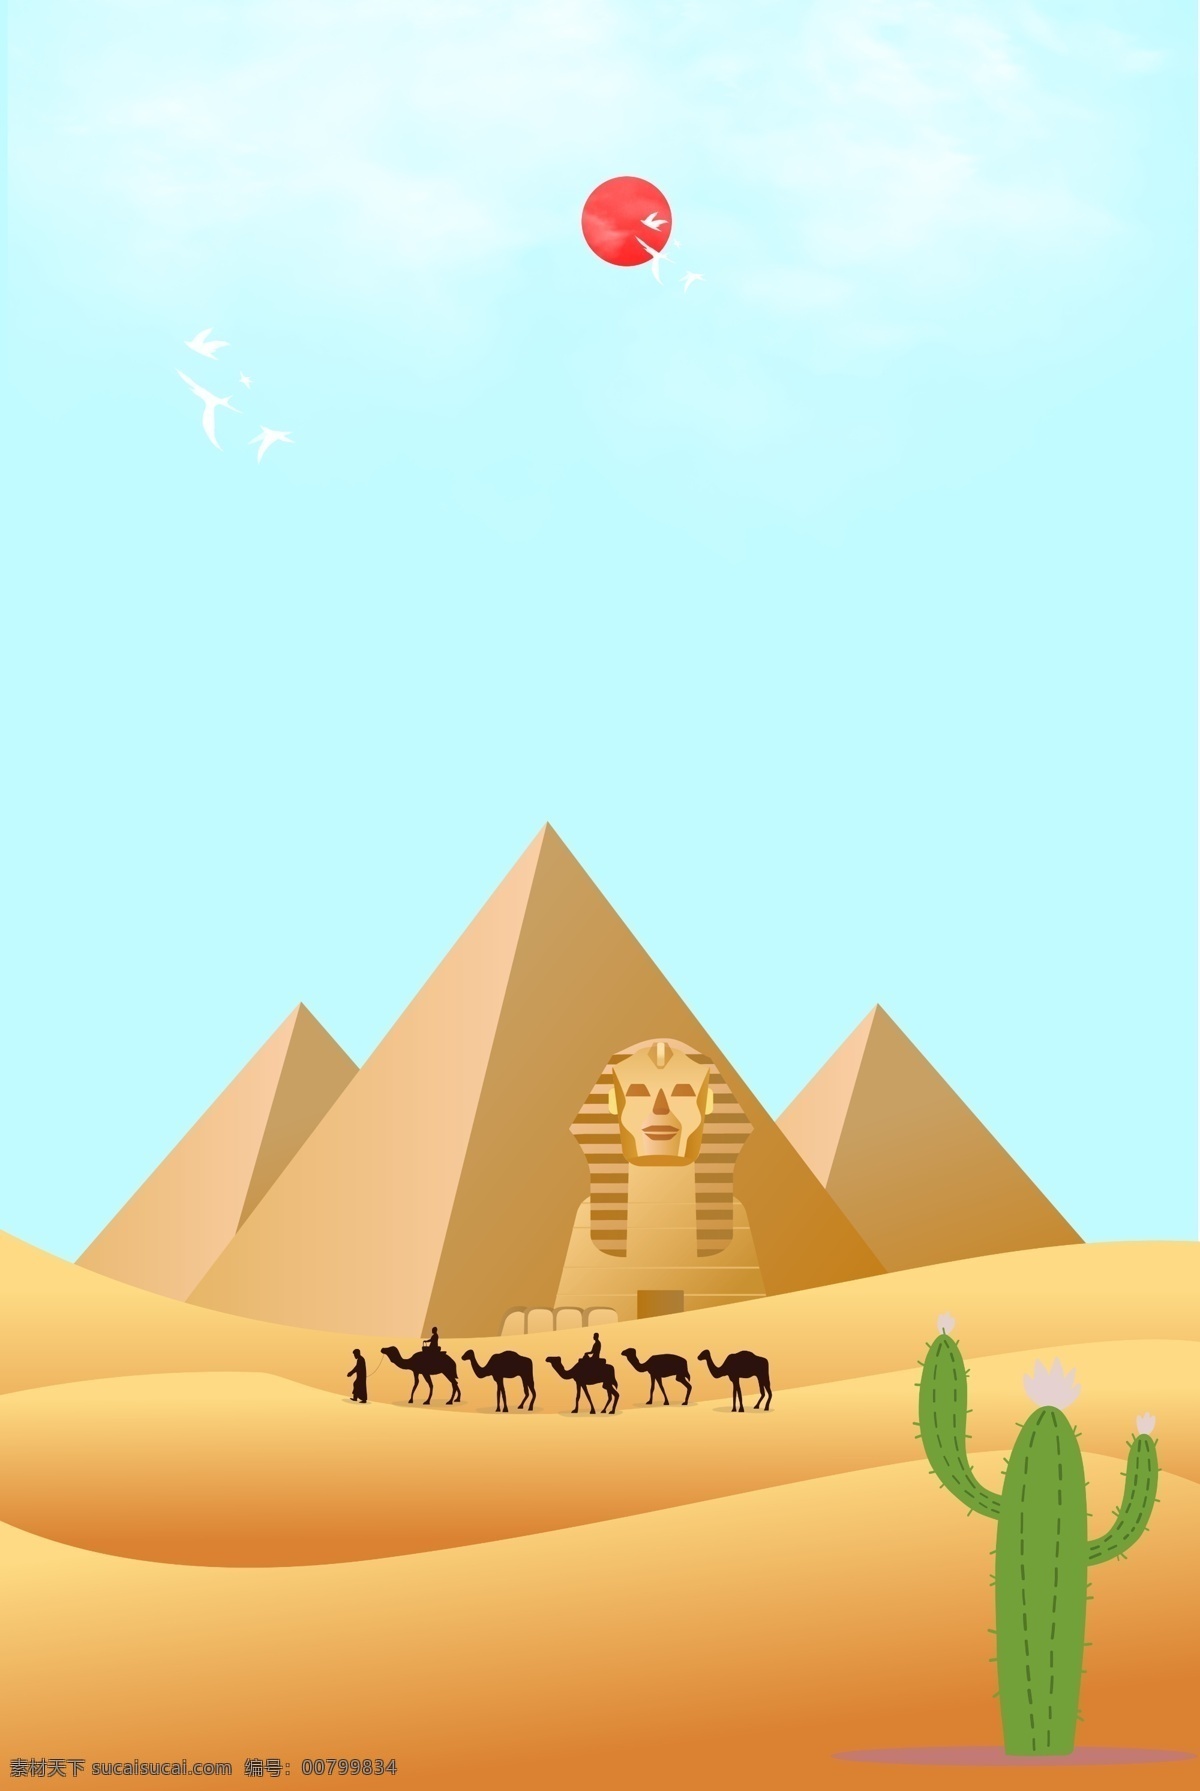 沙漠 景色 景点 背景 图 旅行 飞机 出境 旅游 骆驼 动物 出游 沙漠植被